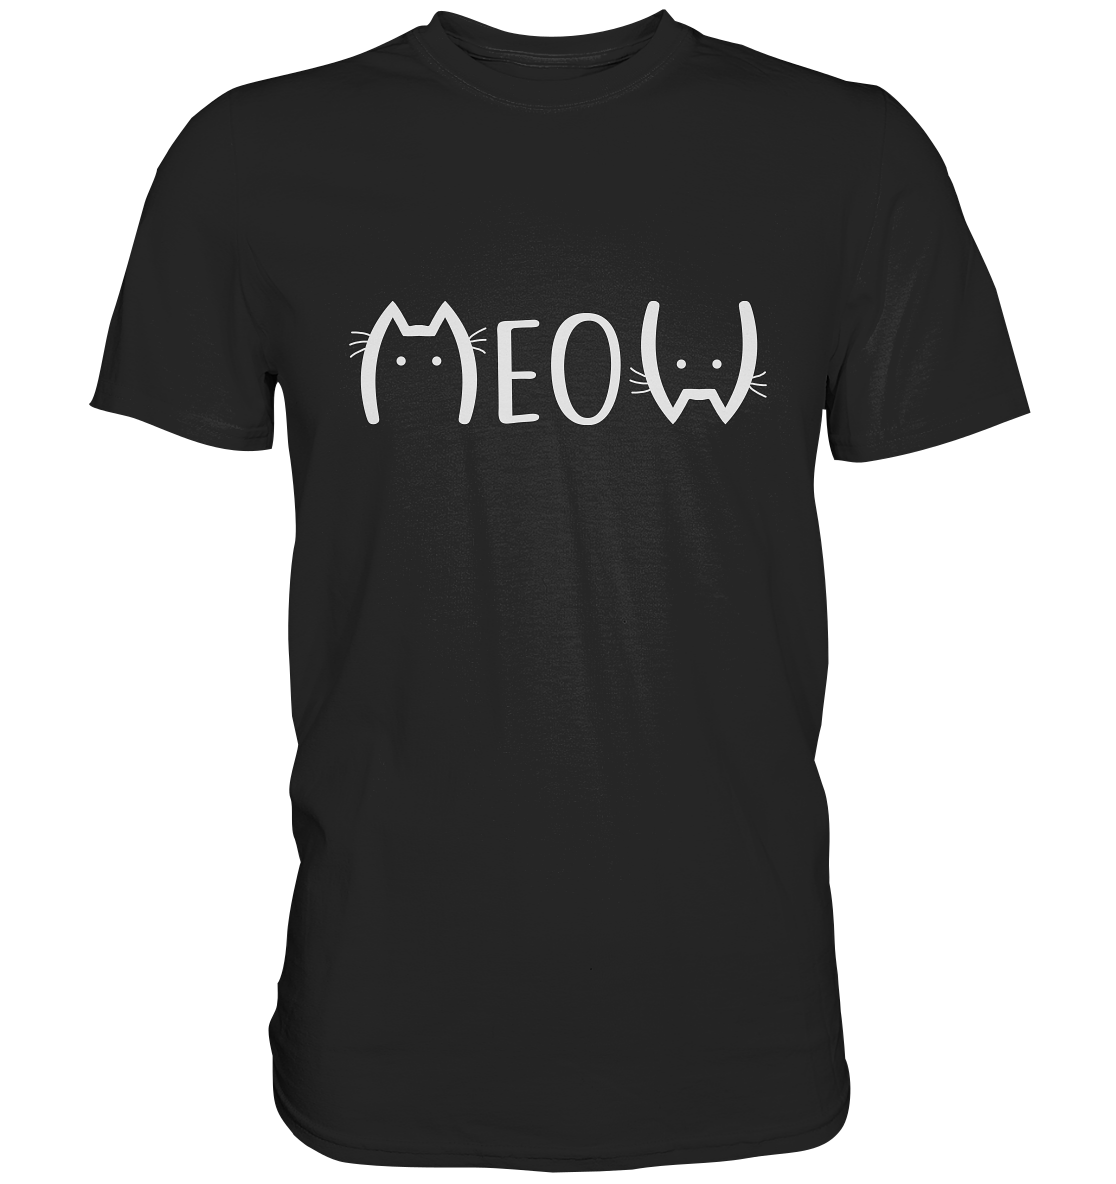 Meow. Katze Miau Kater - Premium Shirt